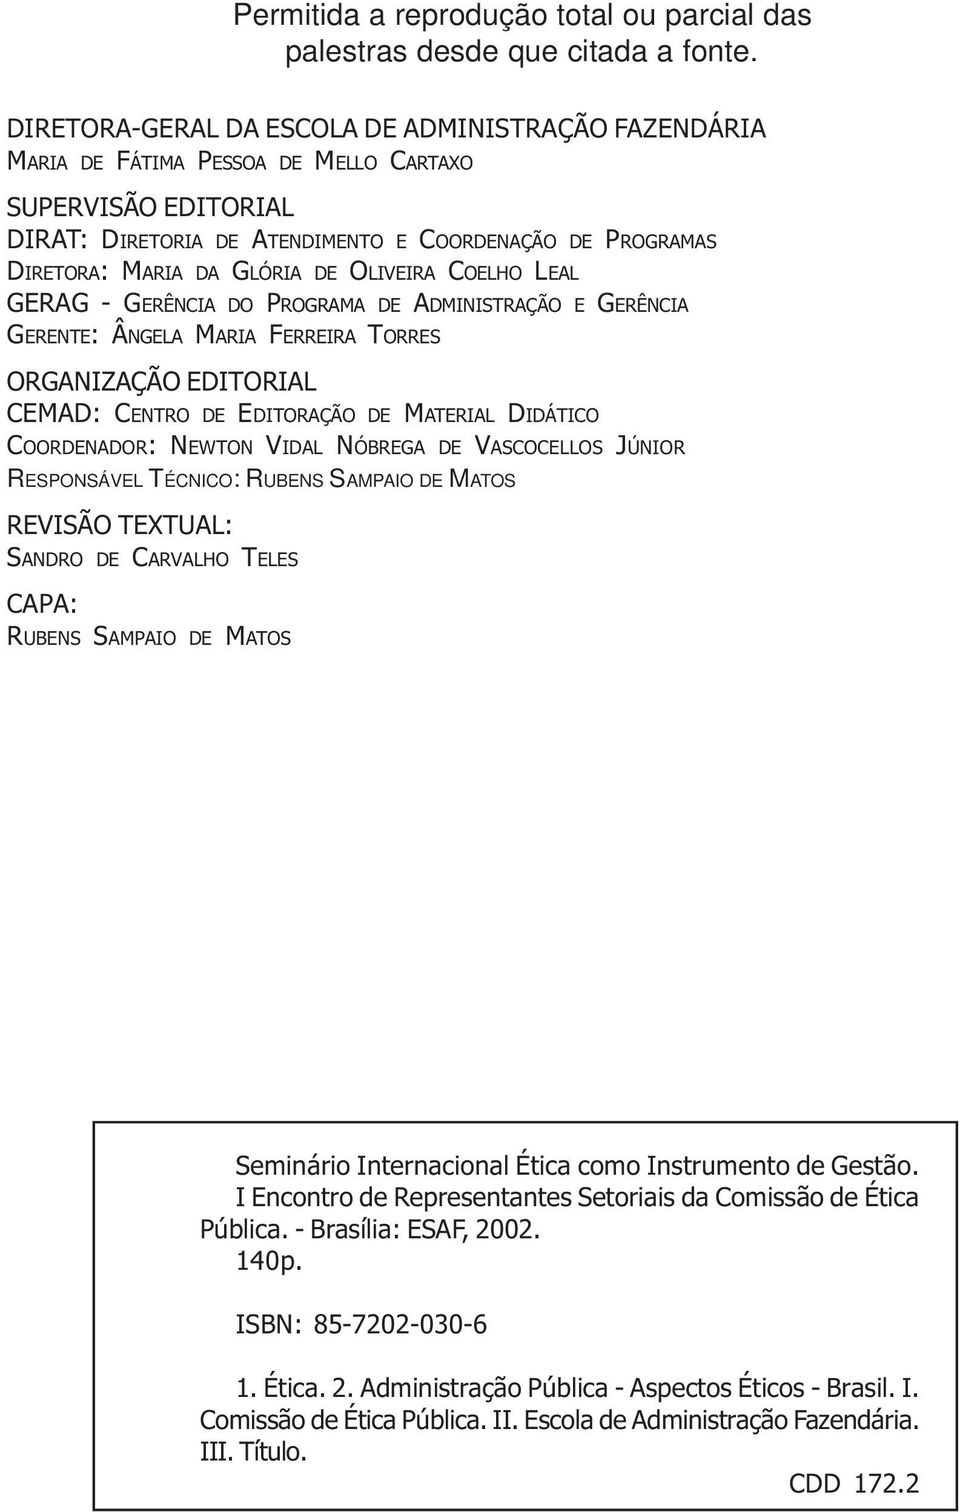 DE OLIVEIRA COELHO LEAL GERAG - GERÊNCIA DO PROGRAMA DE ADMINISTRAÇÃO E GERÊNCIA GERENTE: ÂNGELA MARIA FERREIRA TORRES ORGANIZAÇÃO EDITORIAL CEMAD: CENTRO DE EDITORAÇÃO DE MATERIAL DIDÁTICO